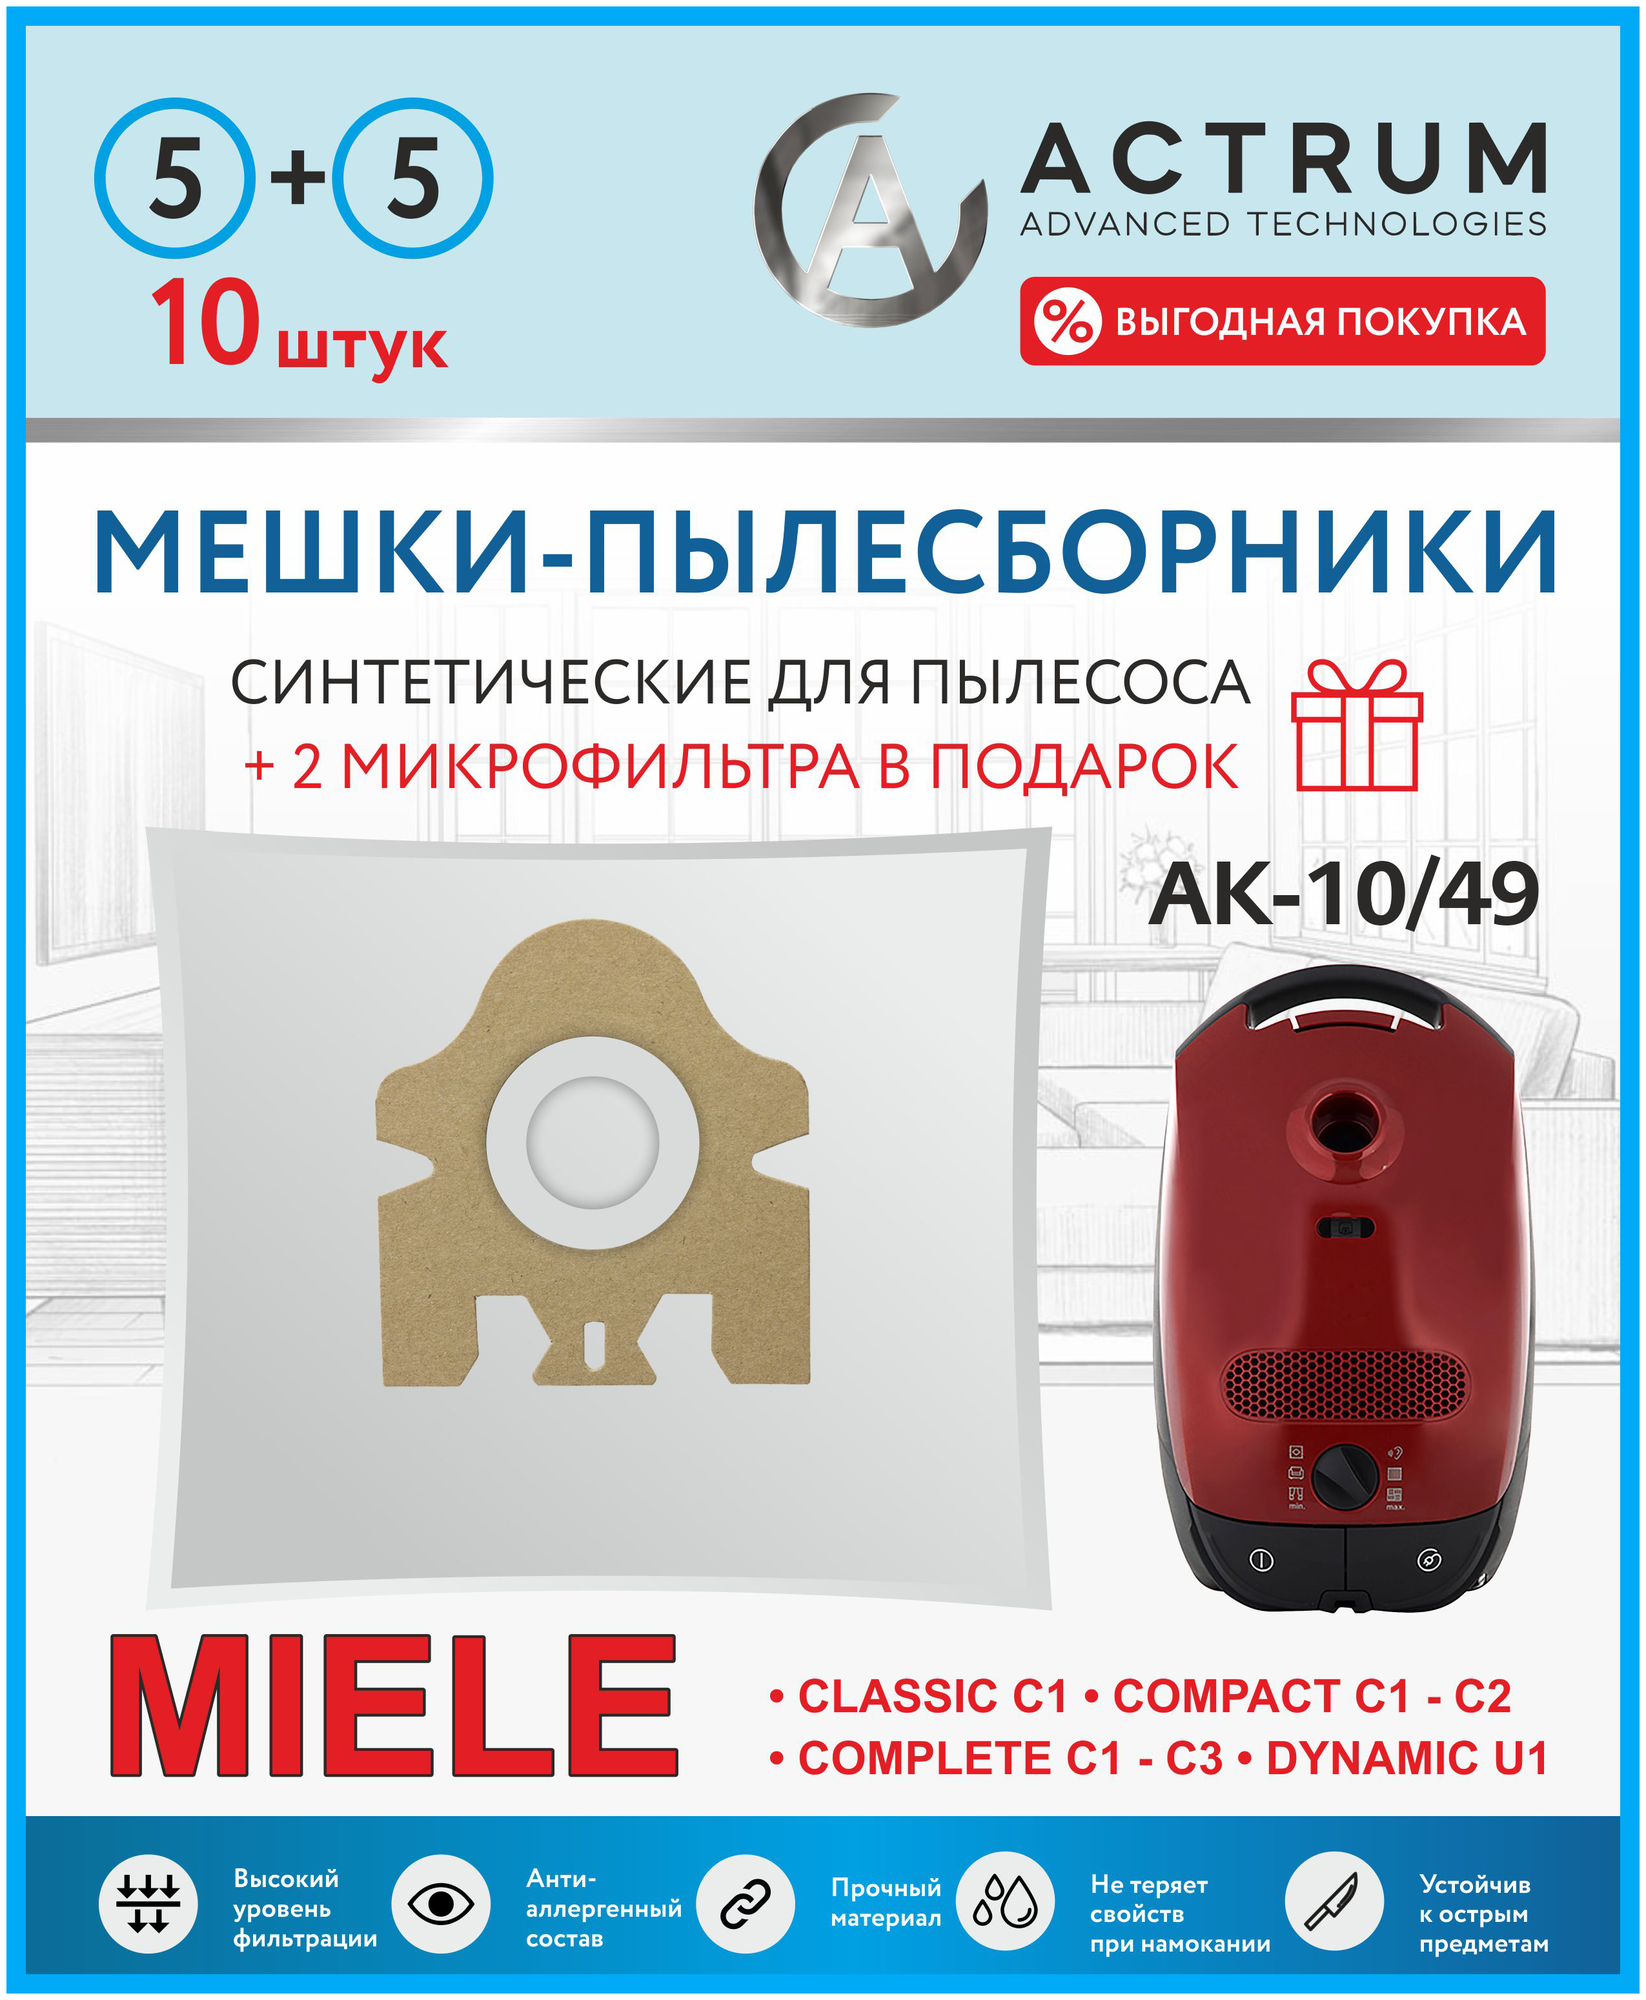 Мешки-пылесборники ACTRUM AK-10/49 для пылесосов MIELE, 10 шт + 2 микрофильтра